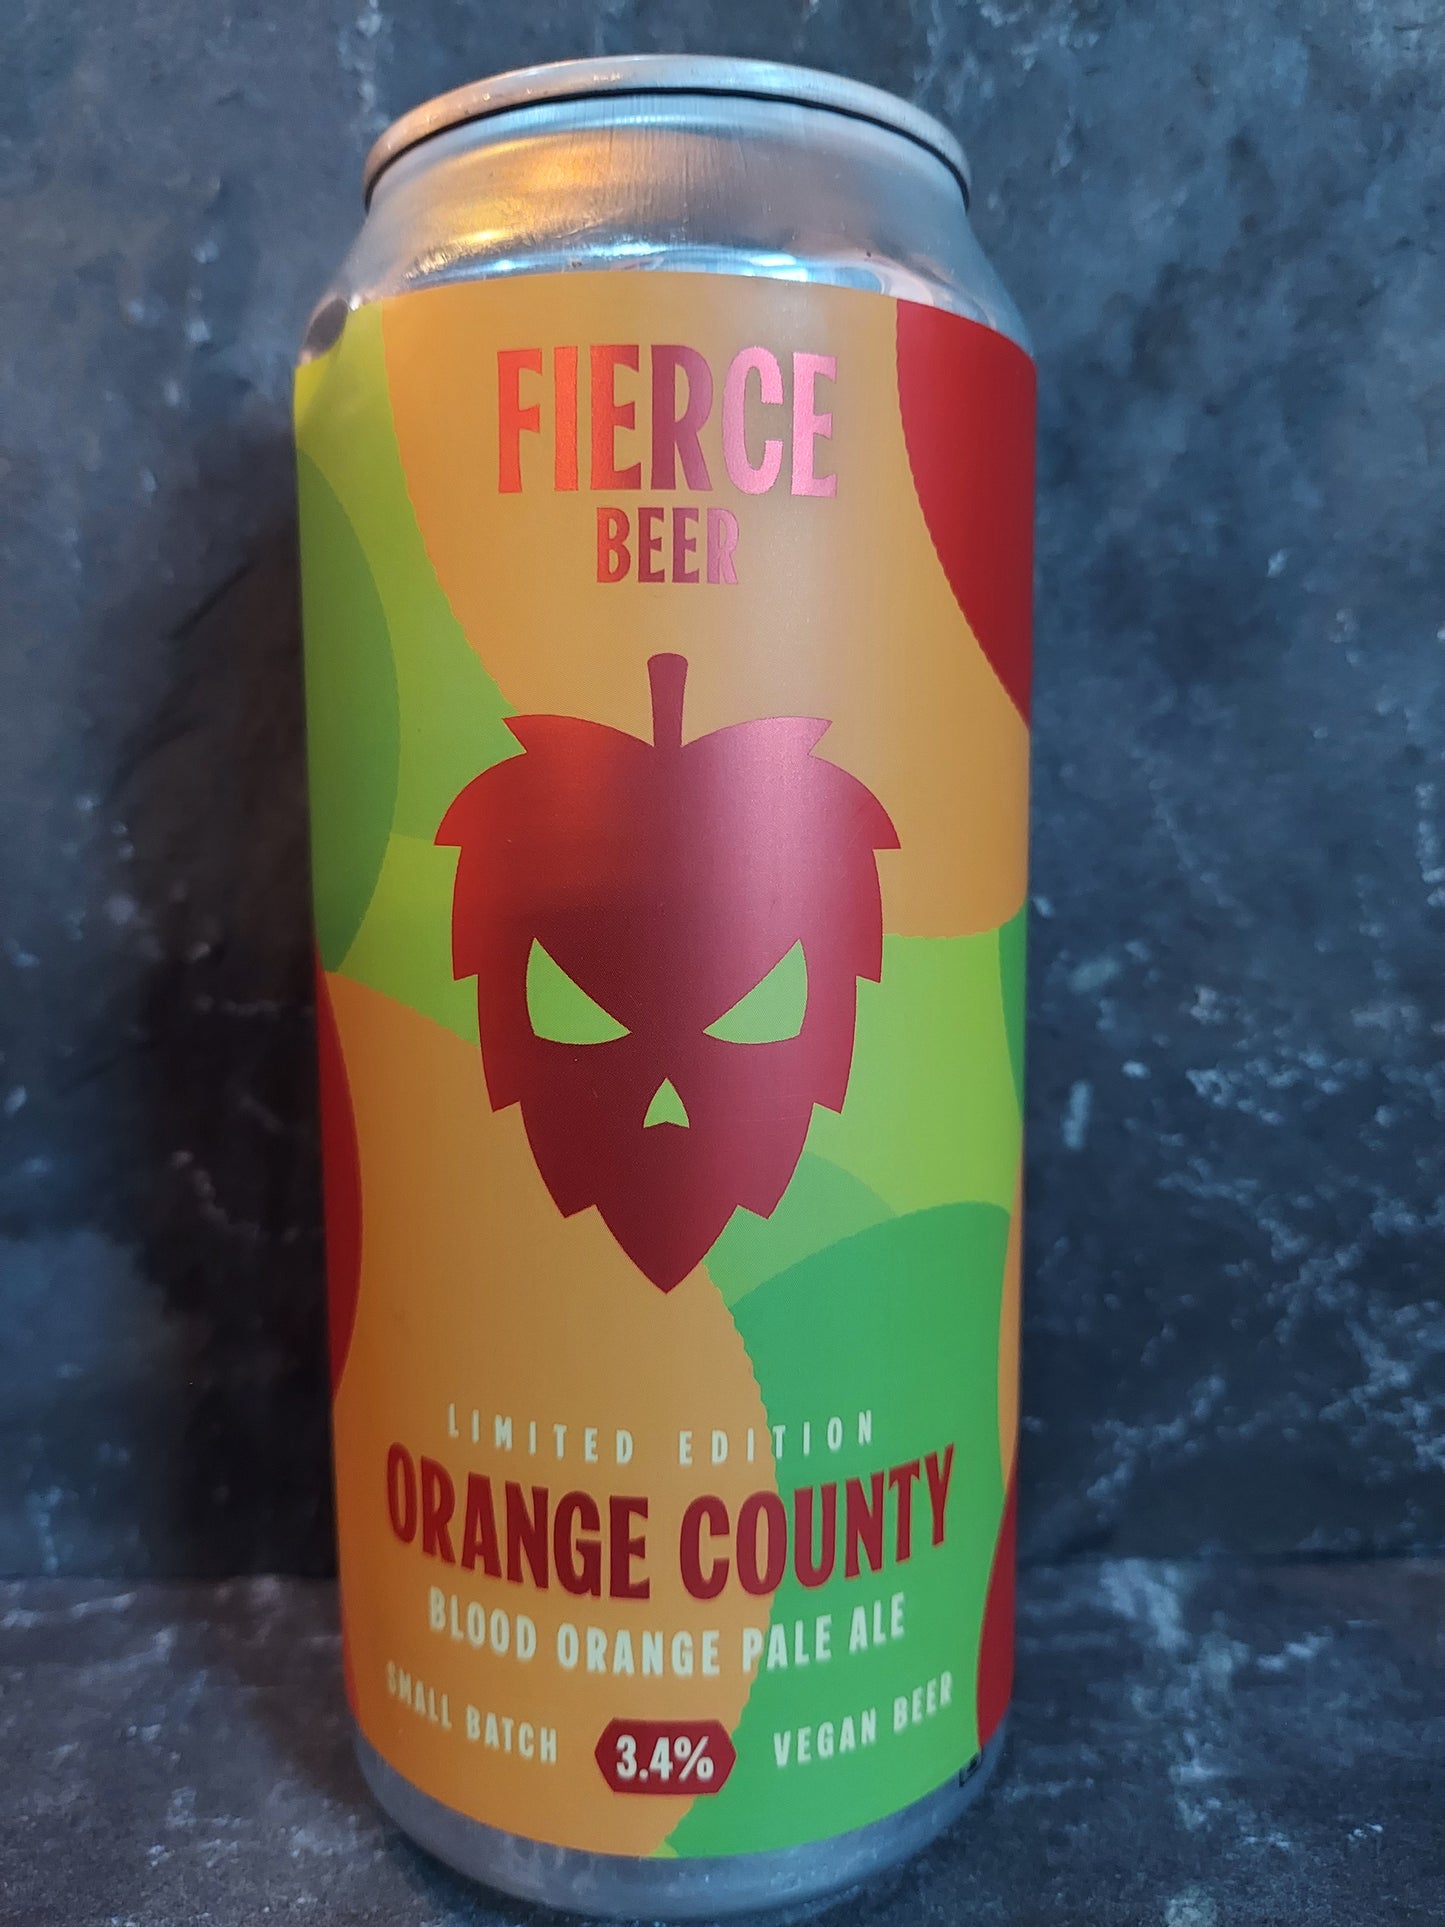 Orange County - Fierce